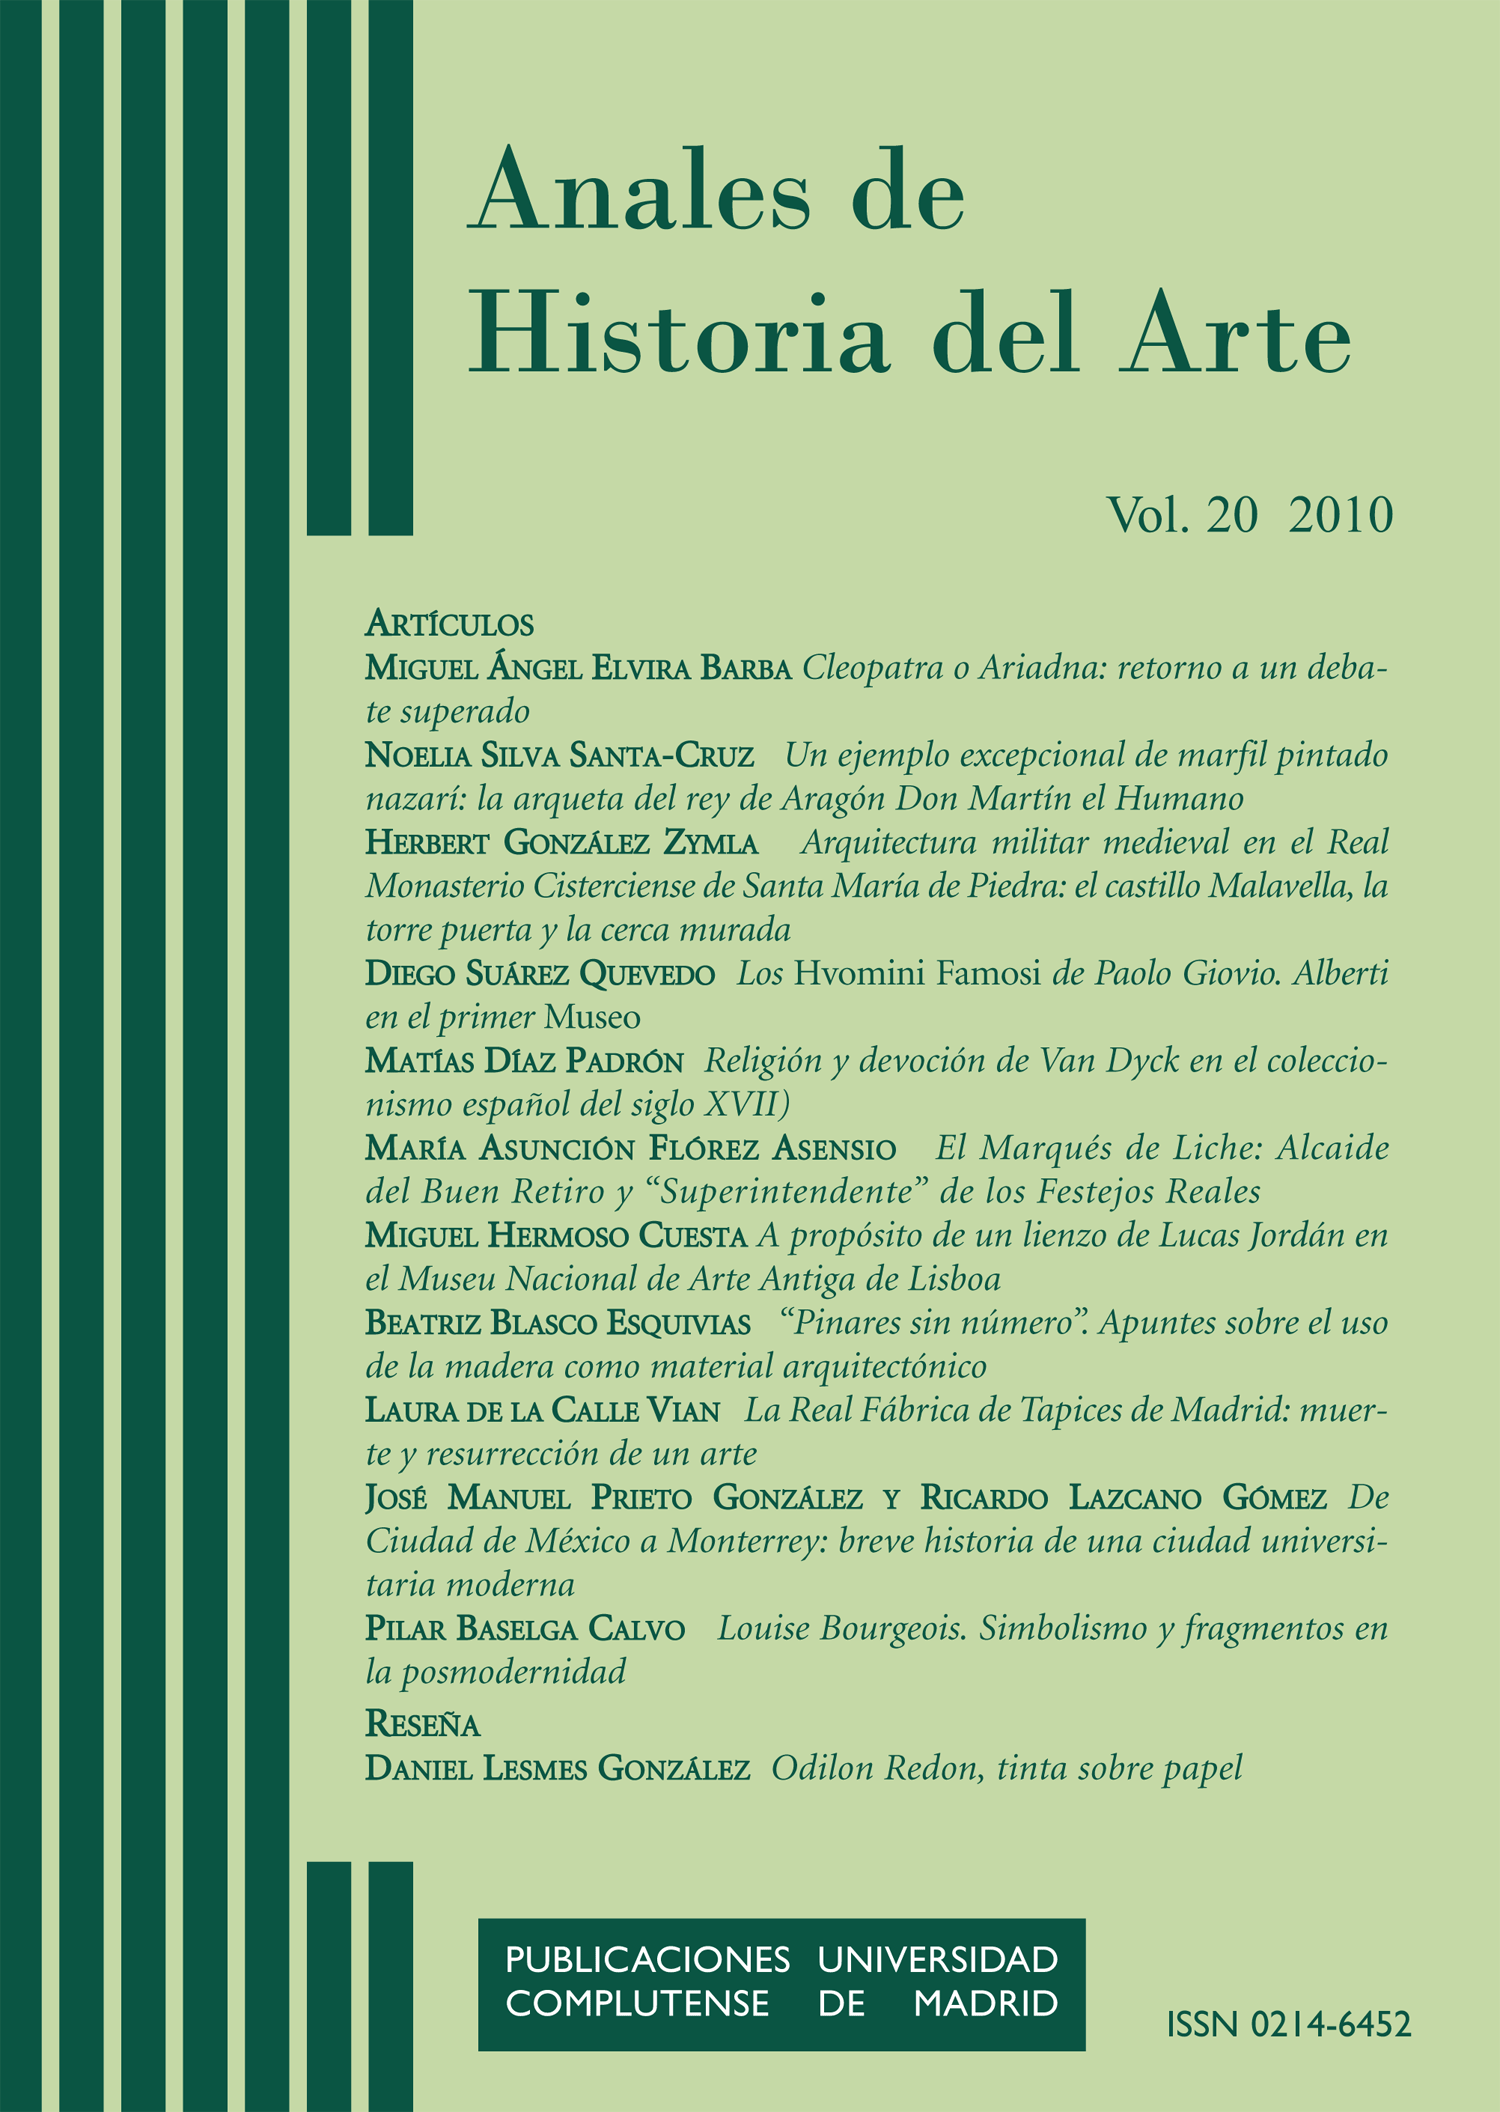 Anales de Historia del Arte Vol. 20